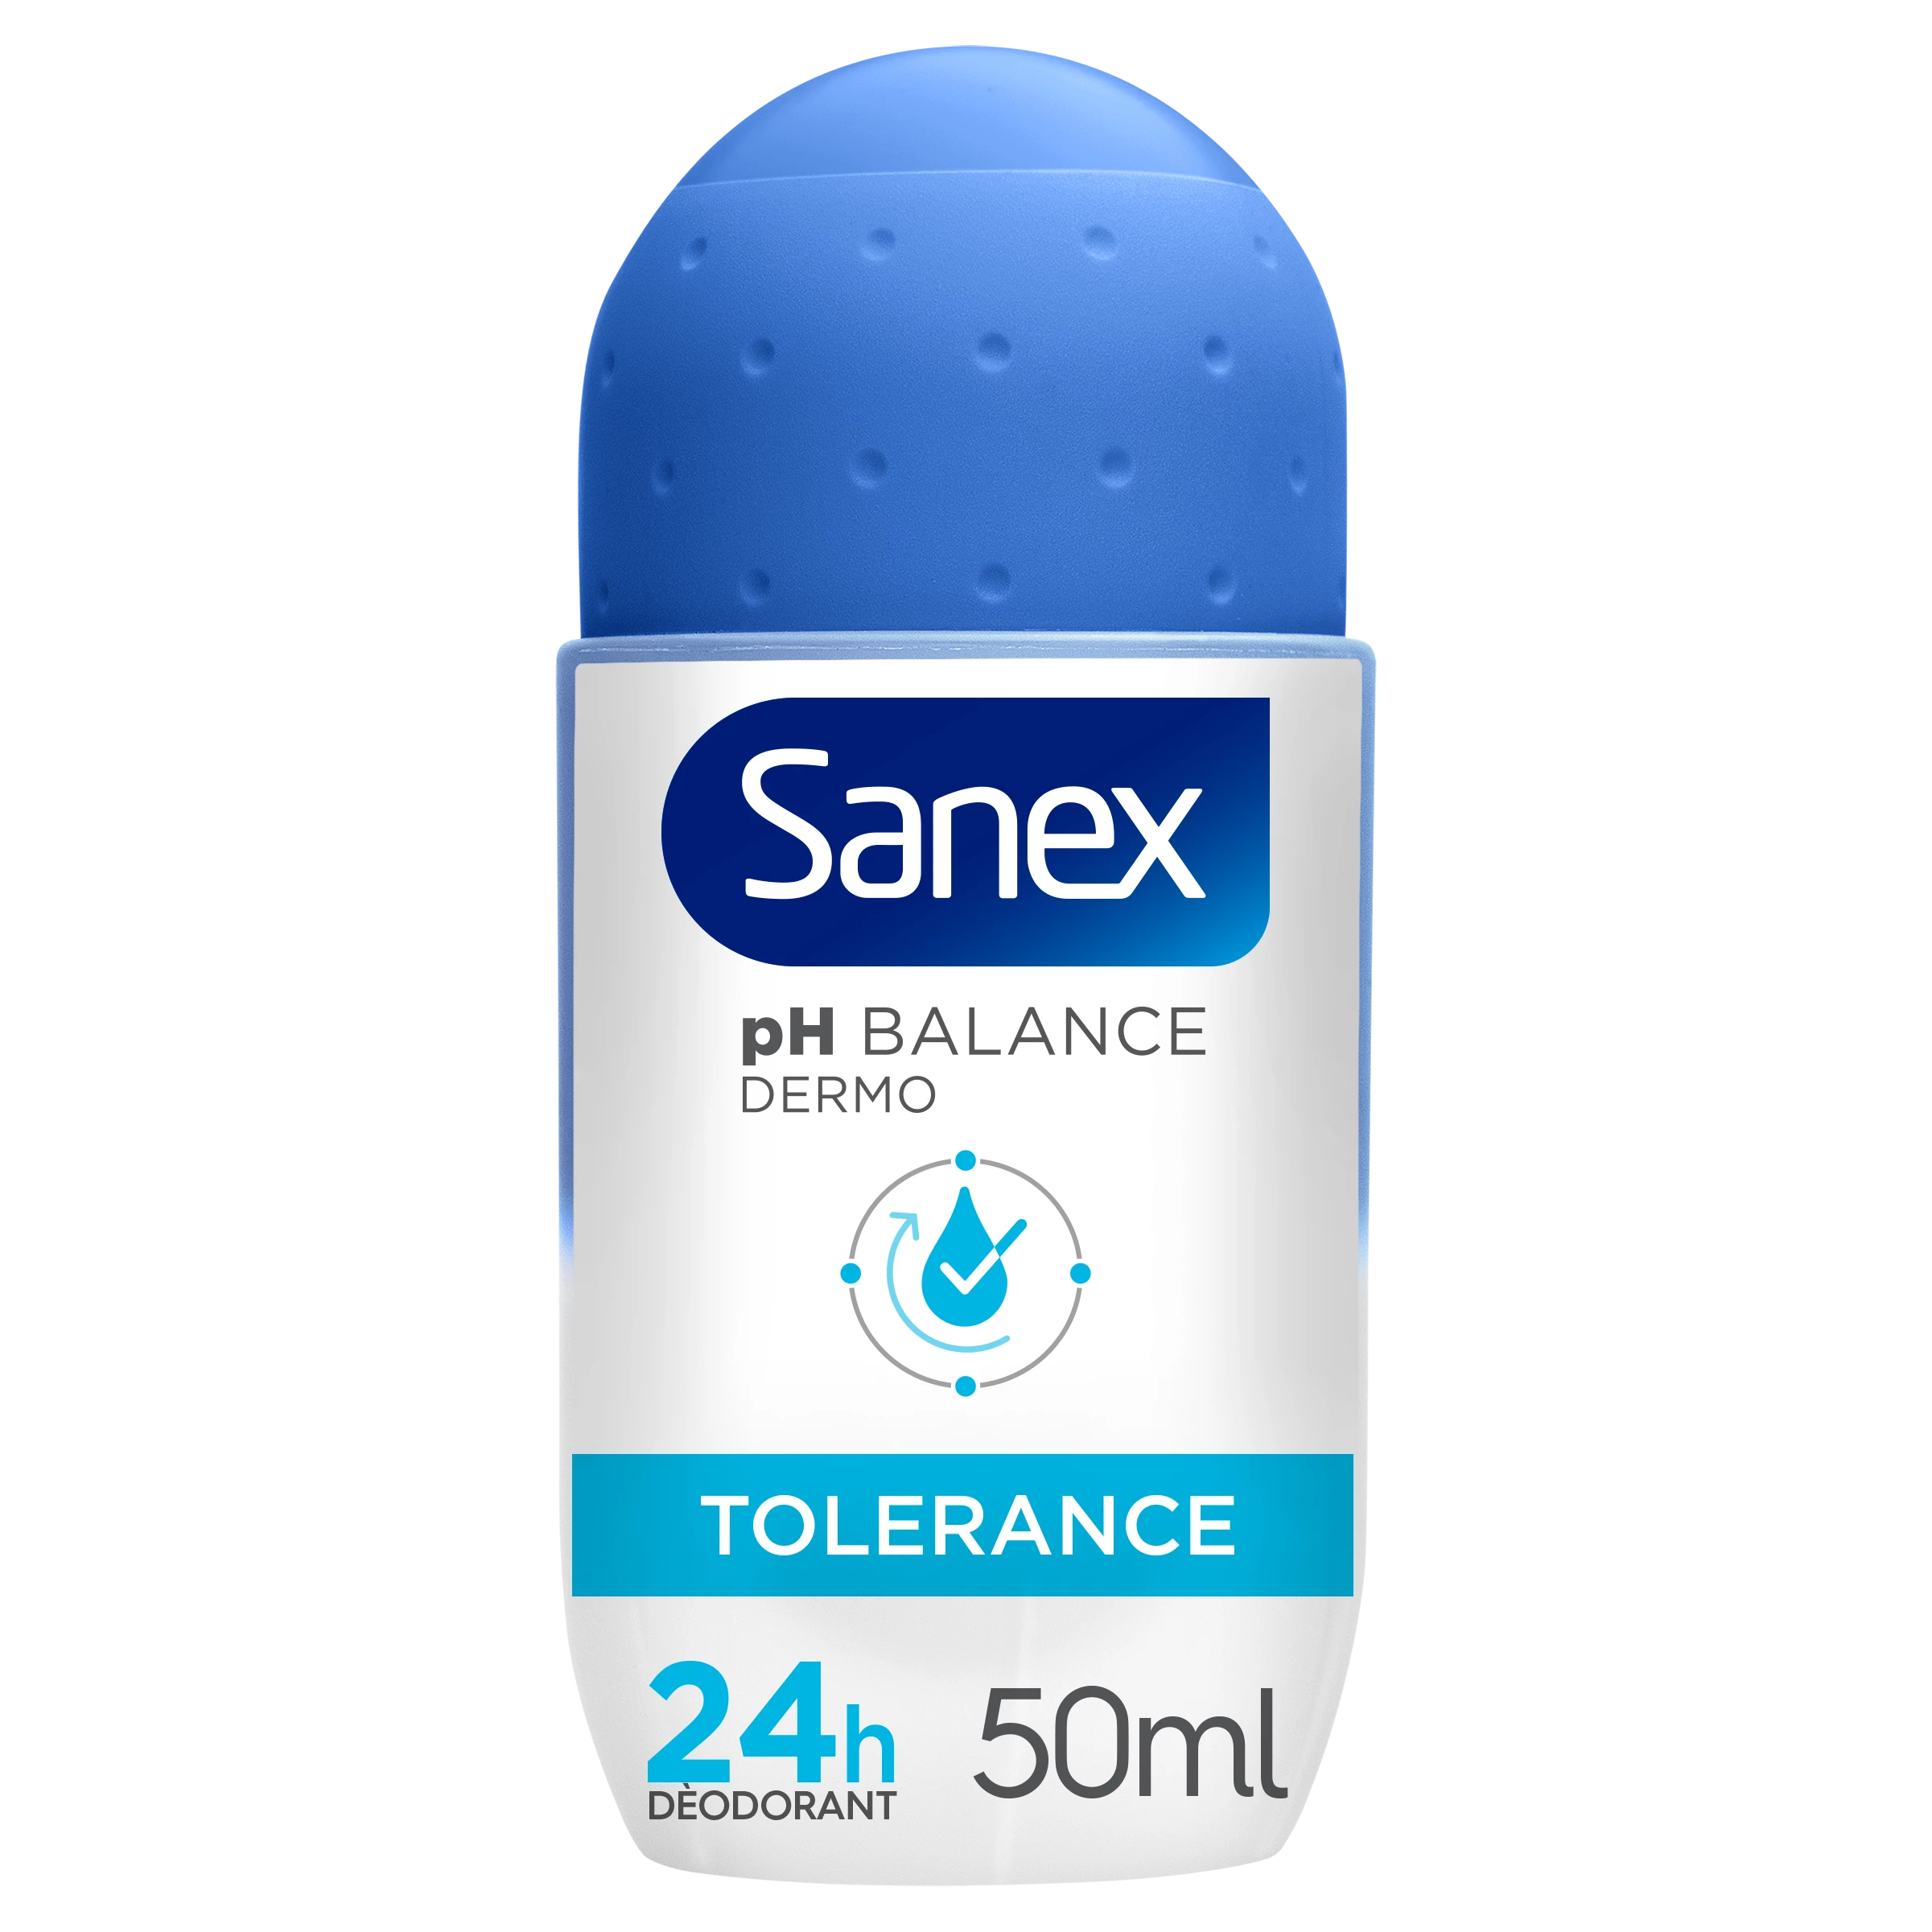 Sanex Dermo Tolerance 50ml